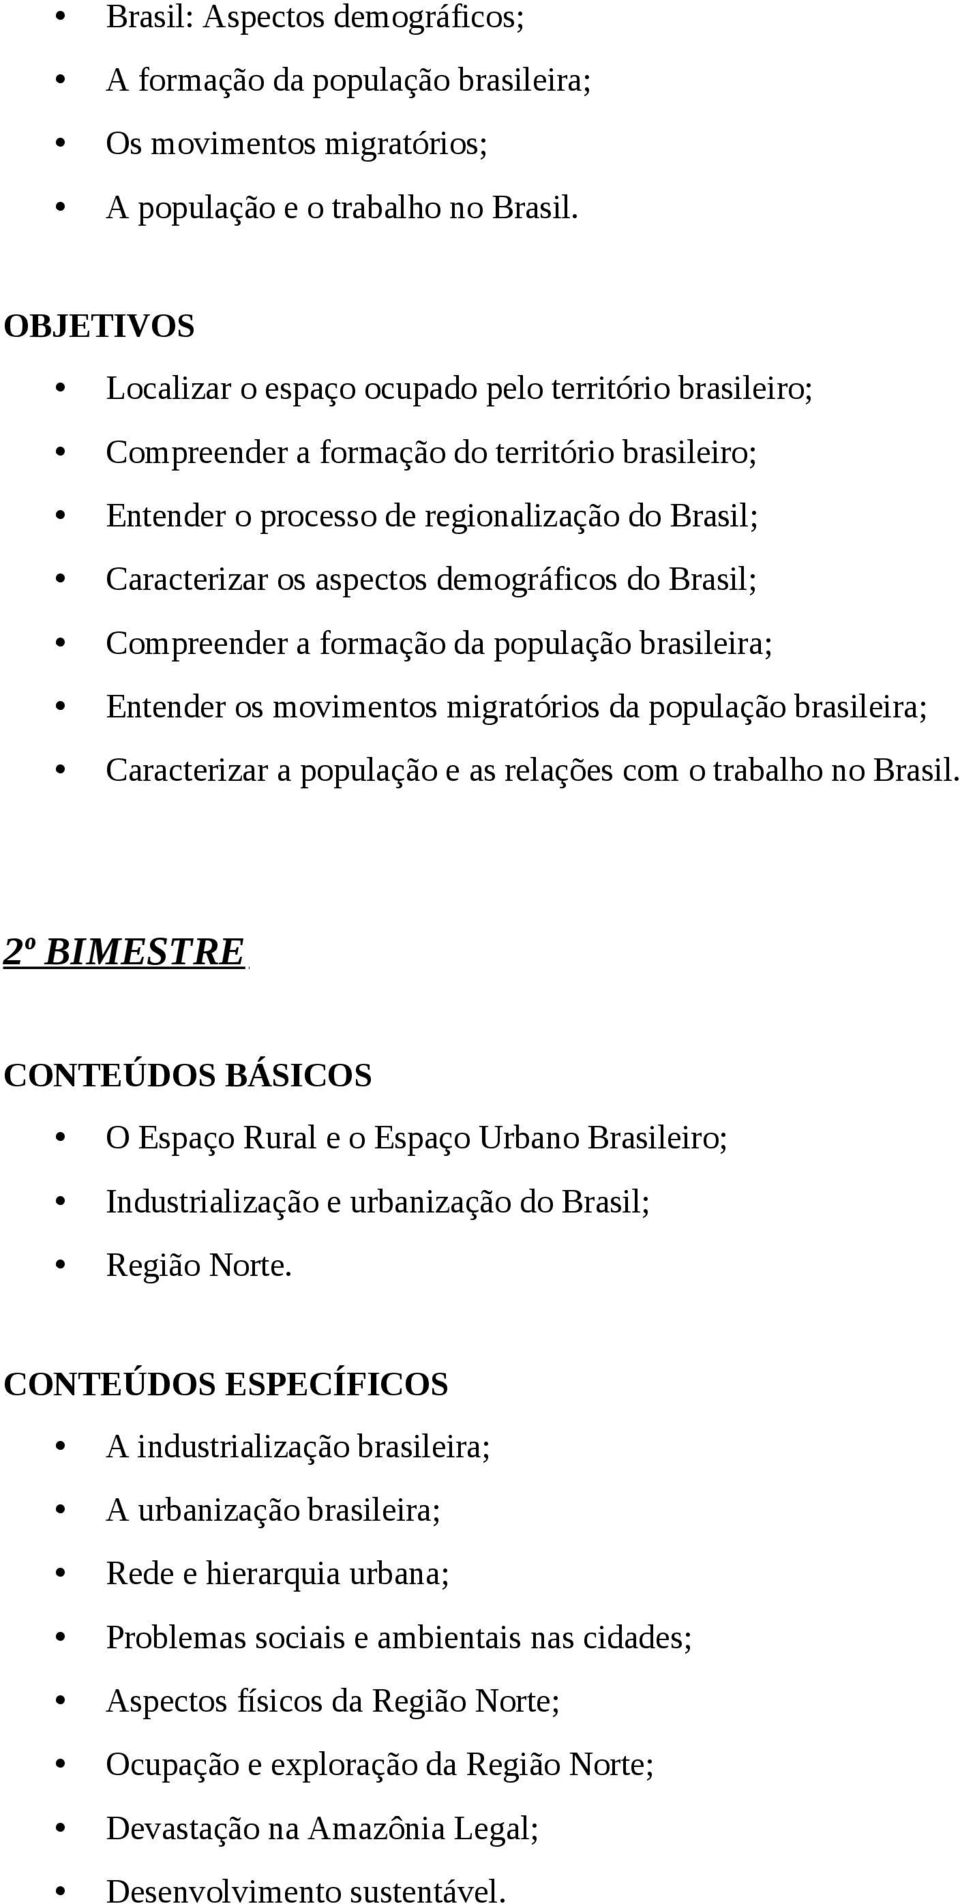 demográficos do Brasil; Compreender a formação da população brasileira; Entender os movimentos migratórios da população brasileira; Caracterizar a população e as relações com o trabalho no Brasil.